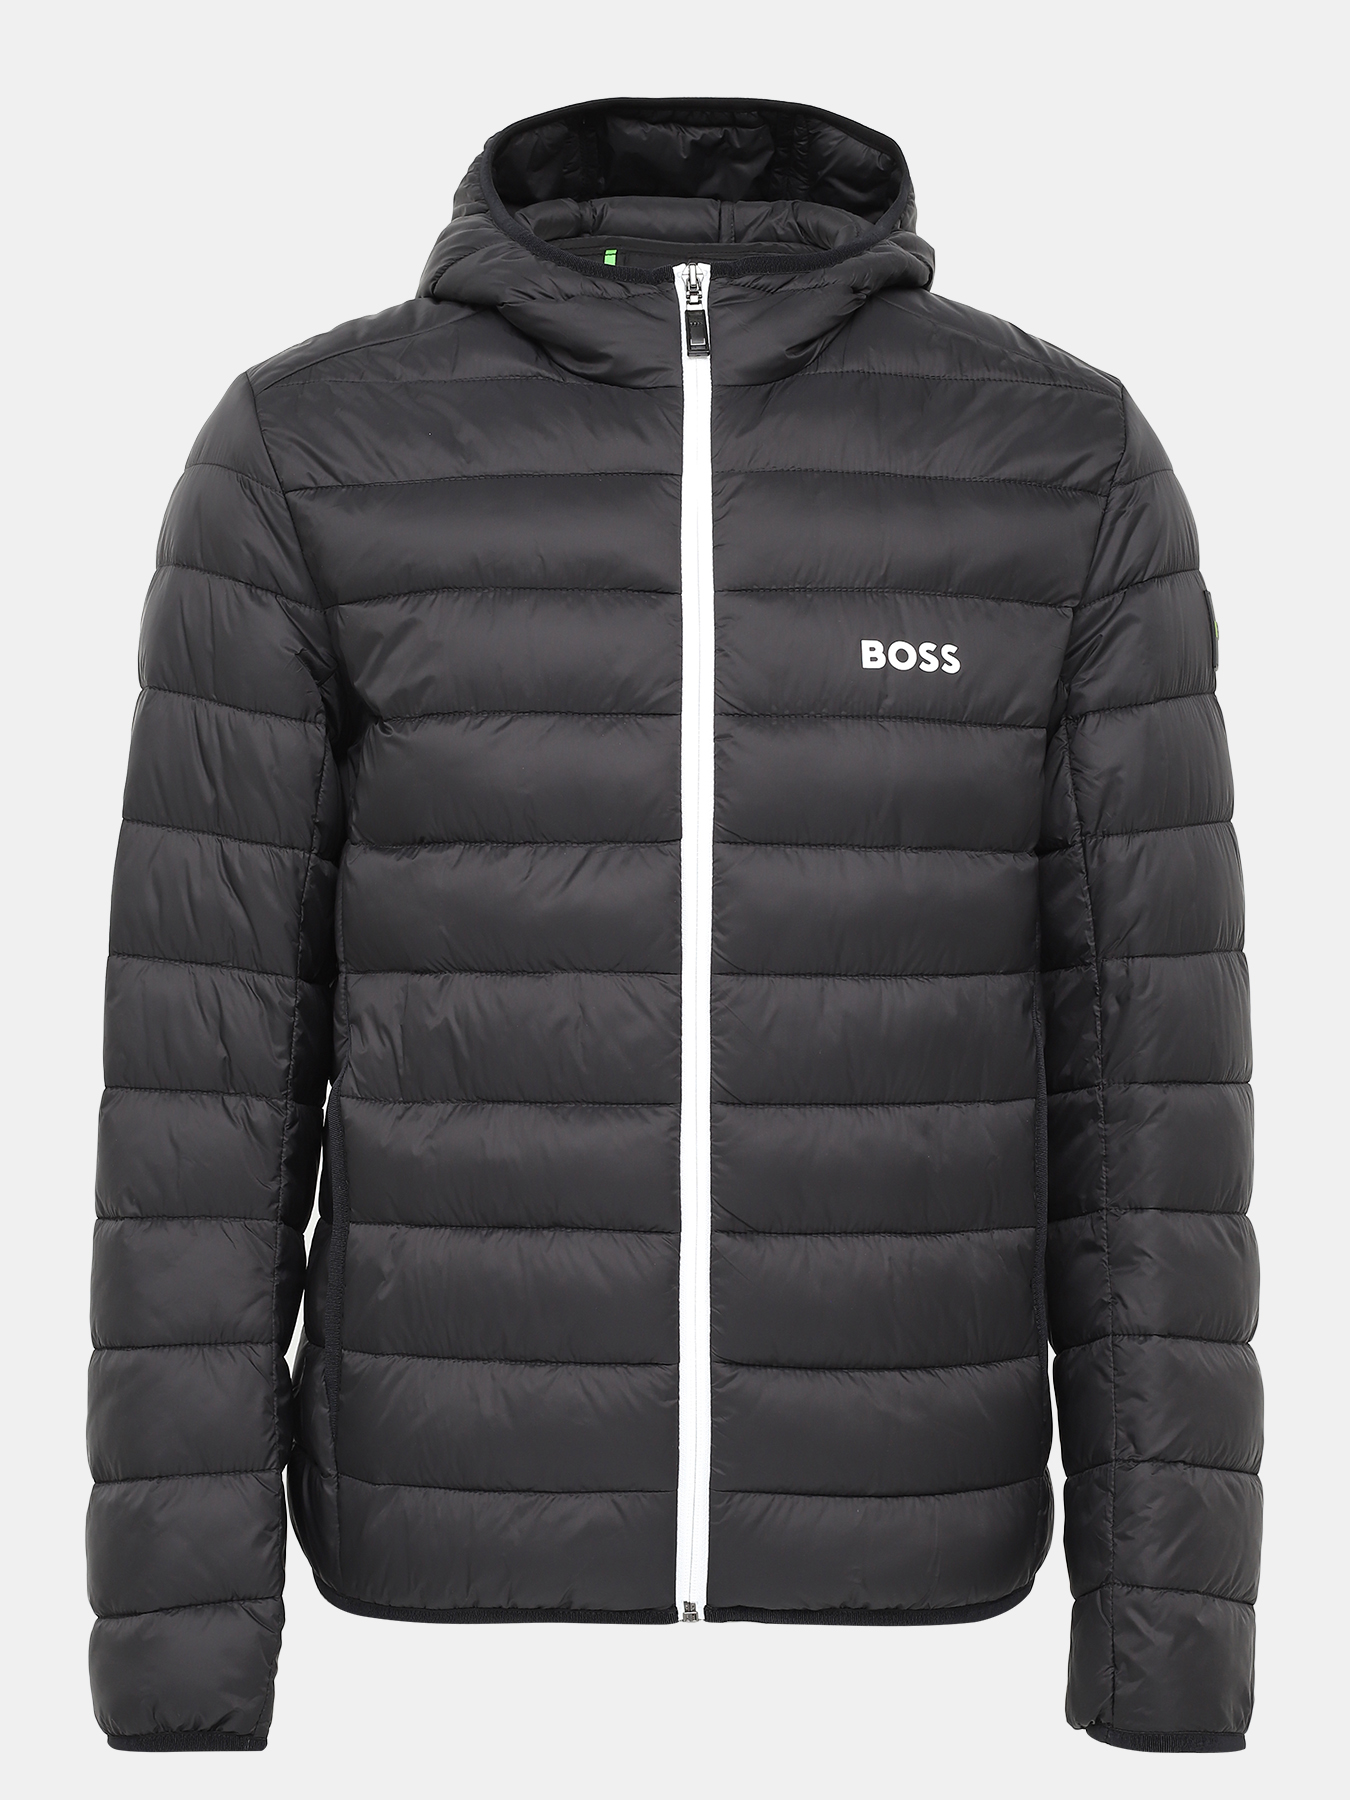 Куртка J Thor BOSS 421131-045, цвет черный, размер 52-54